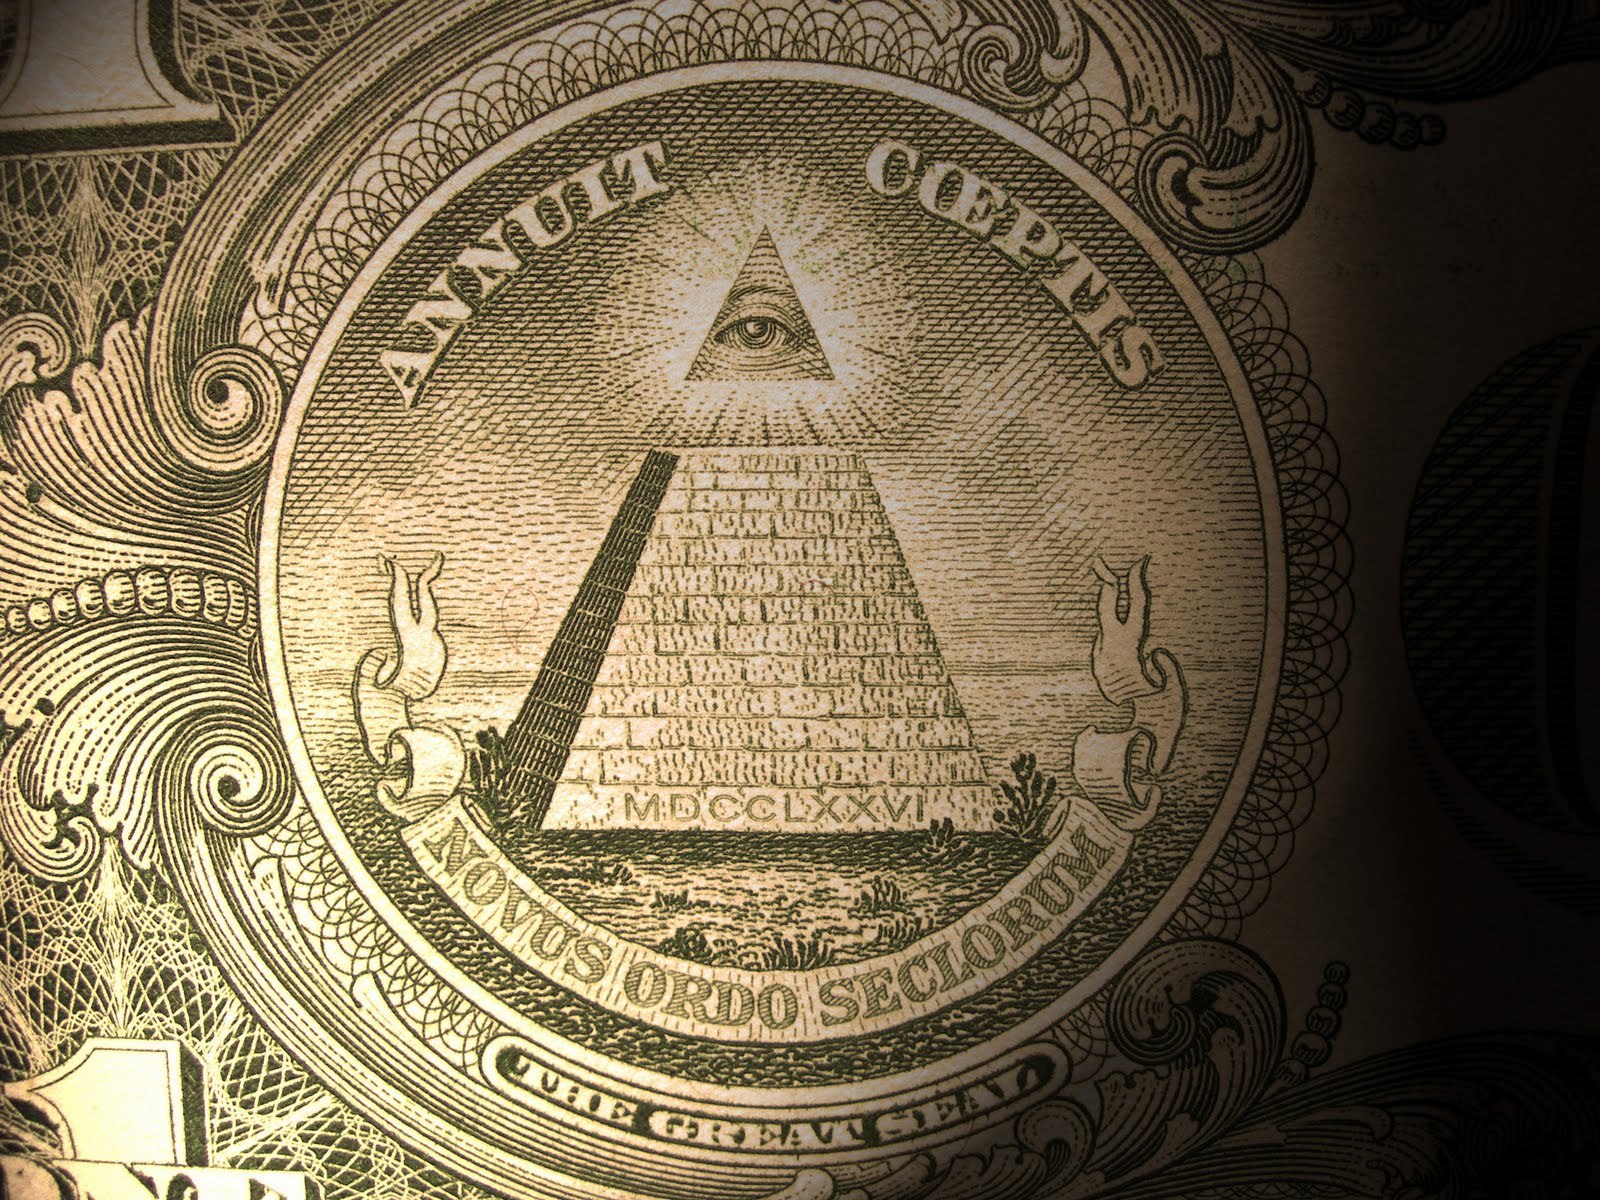 Illuminati Symbols On Money